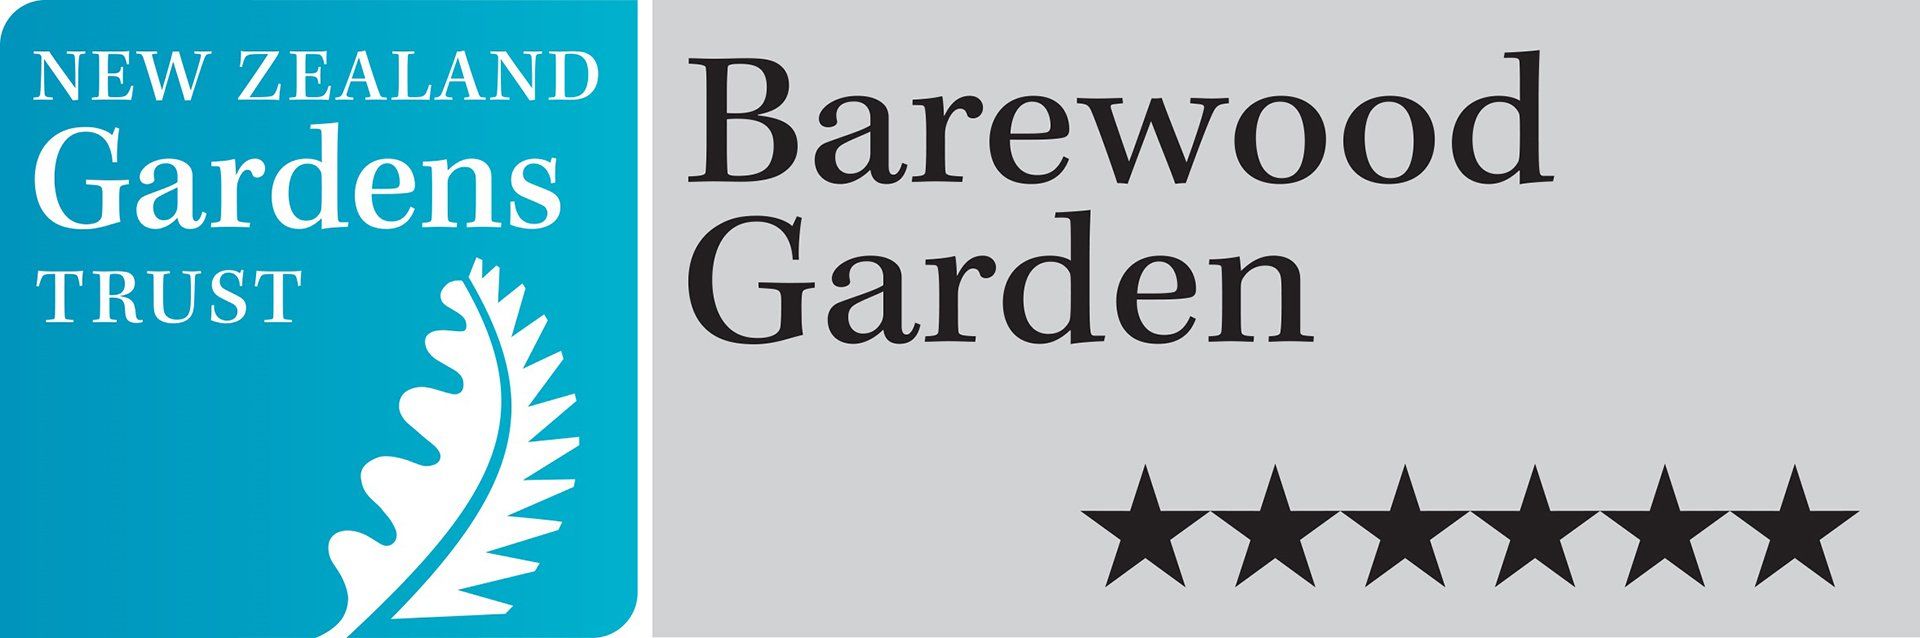 Barewood Garden Marlborough NZ Trust Logo